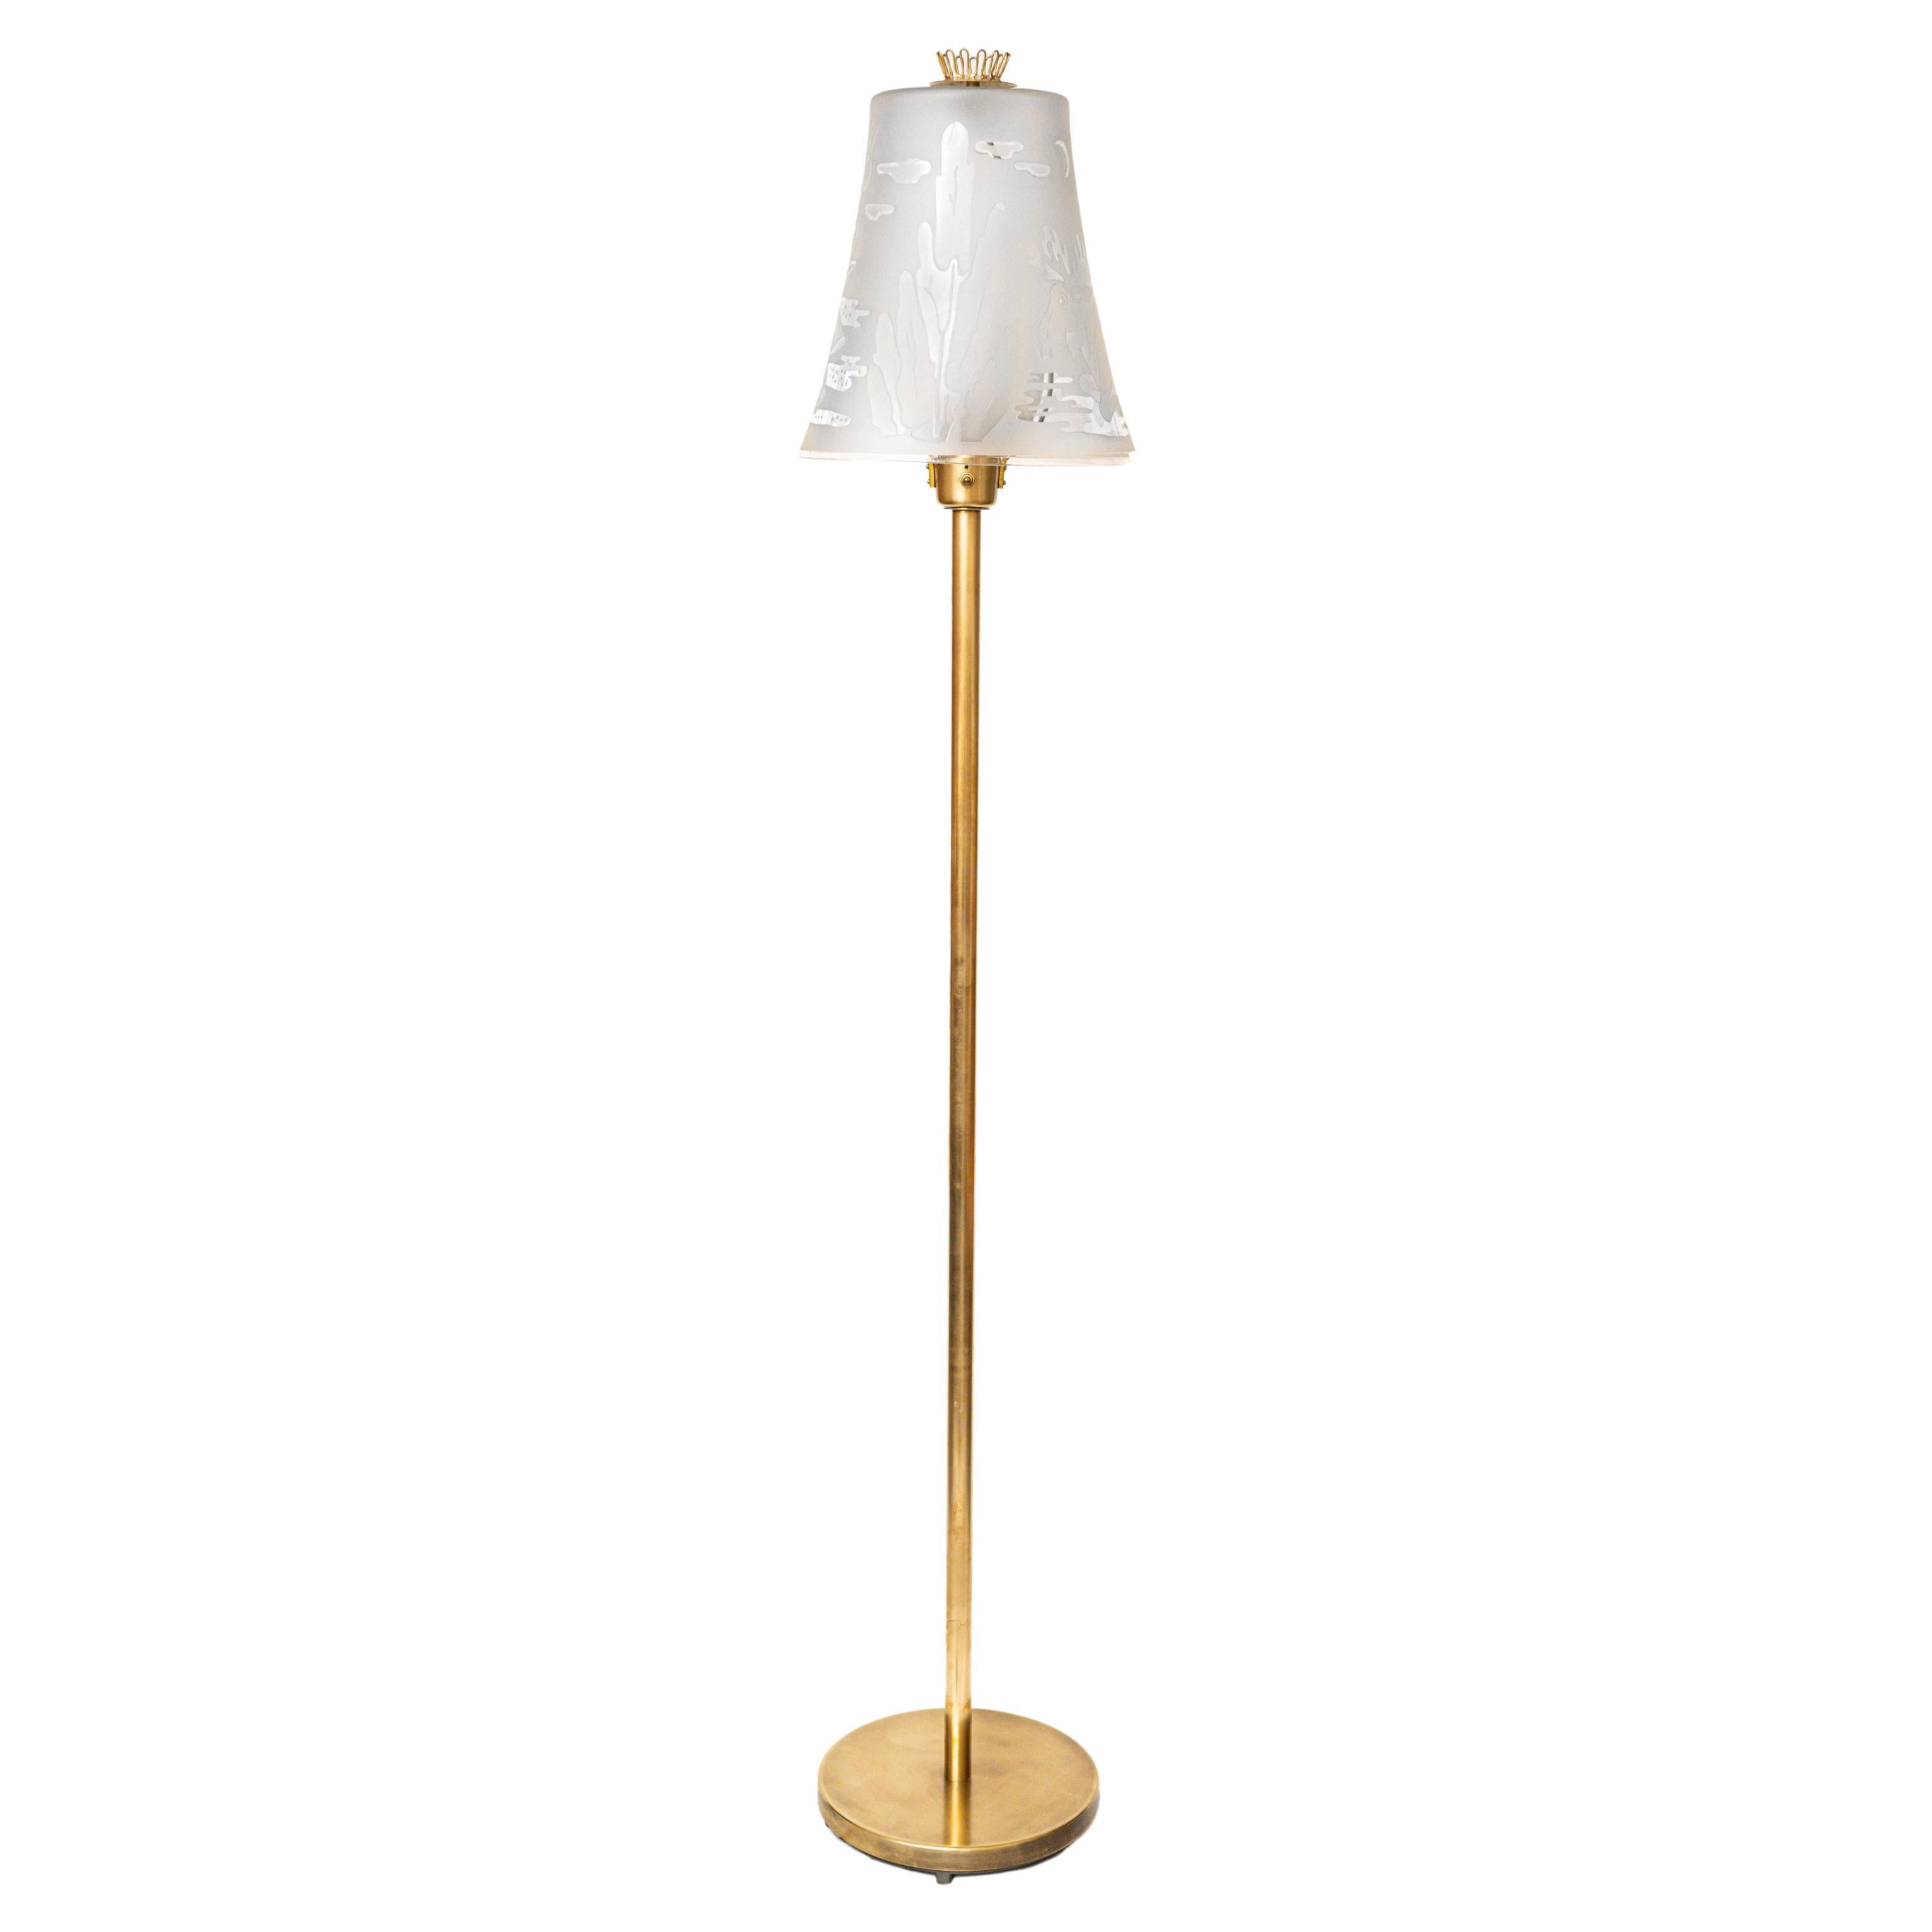 1940s U. Skogh Floor Lamp Produced by Glössner & Co.